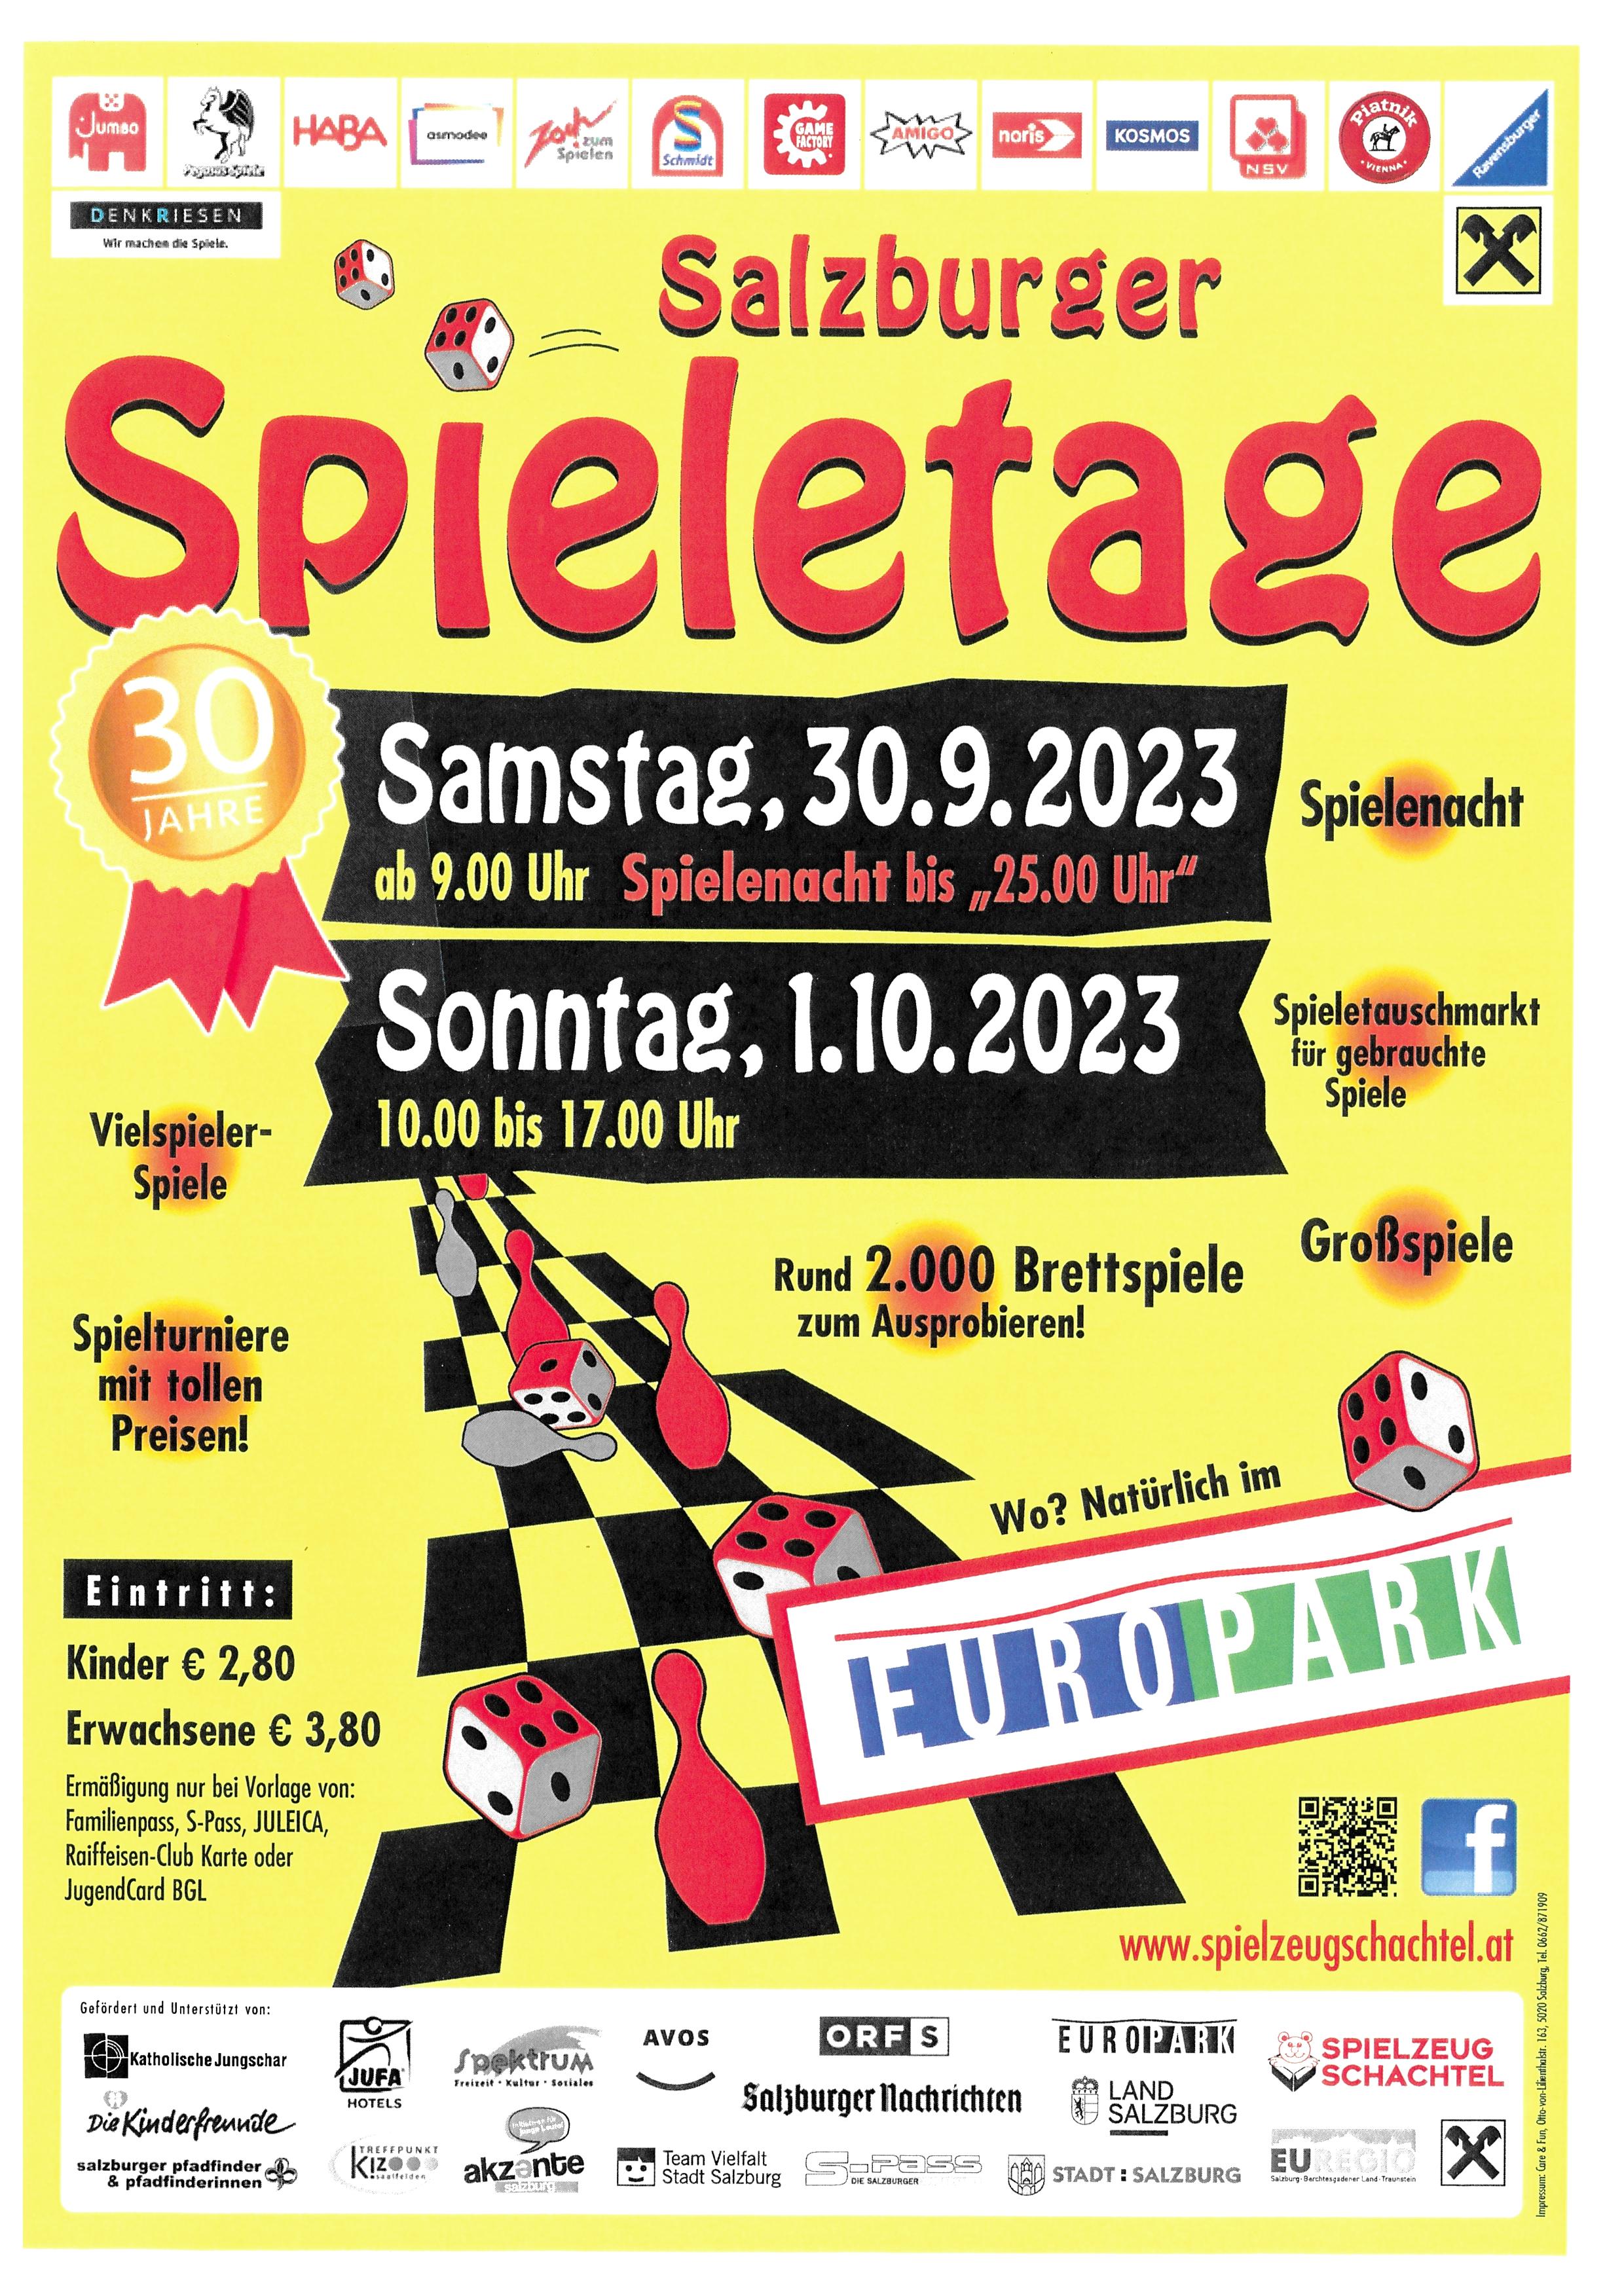 Salzburger Spieletage 2023